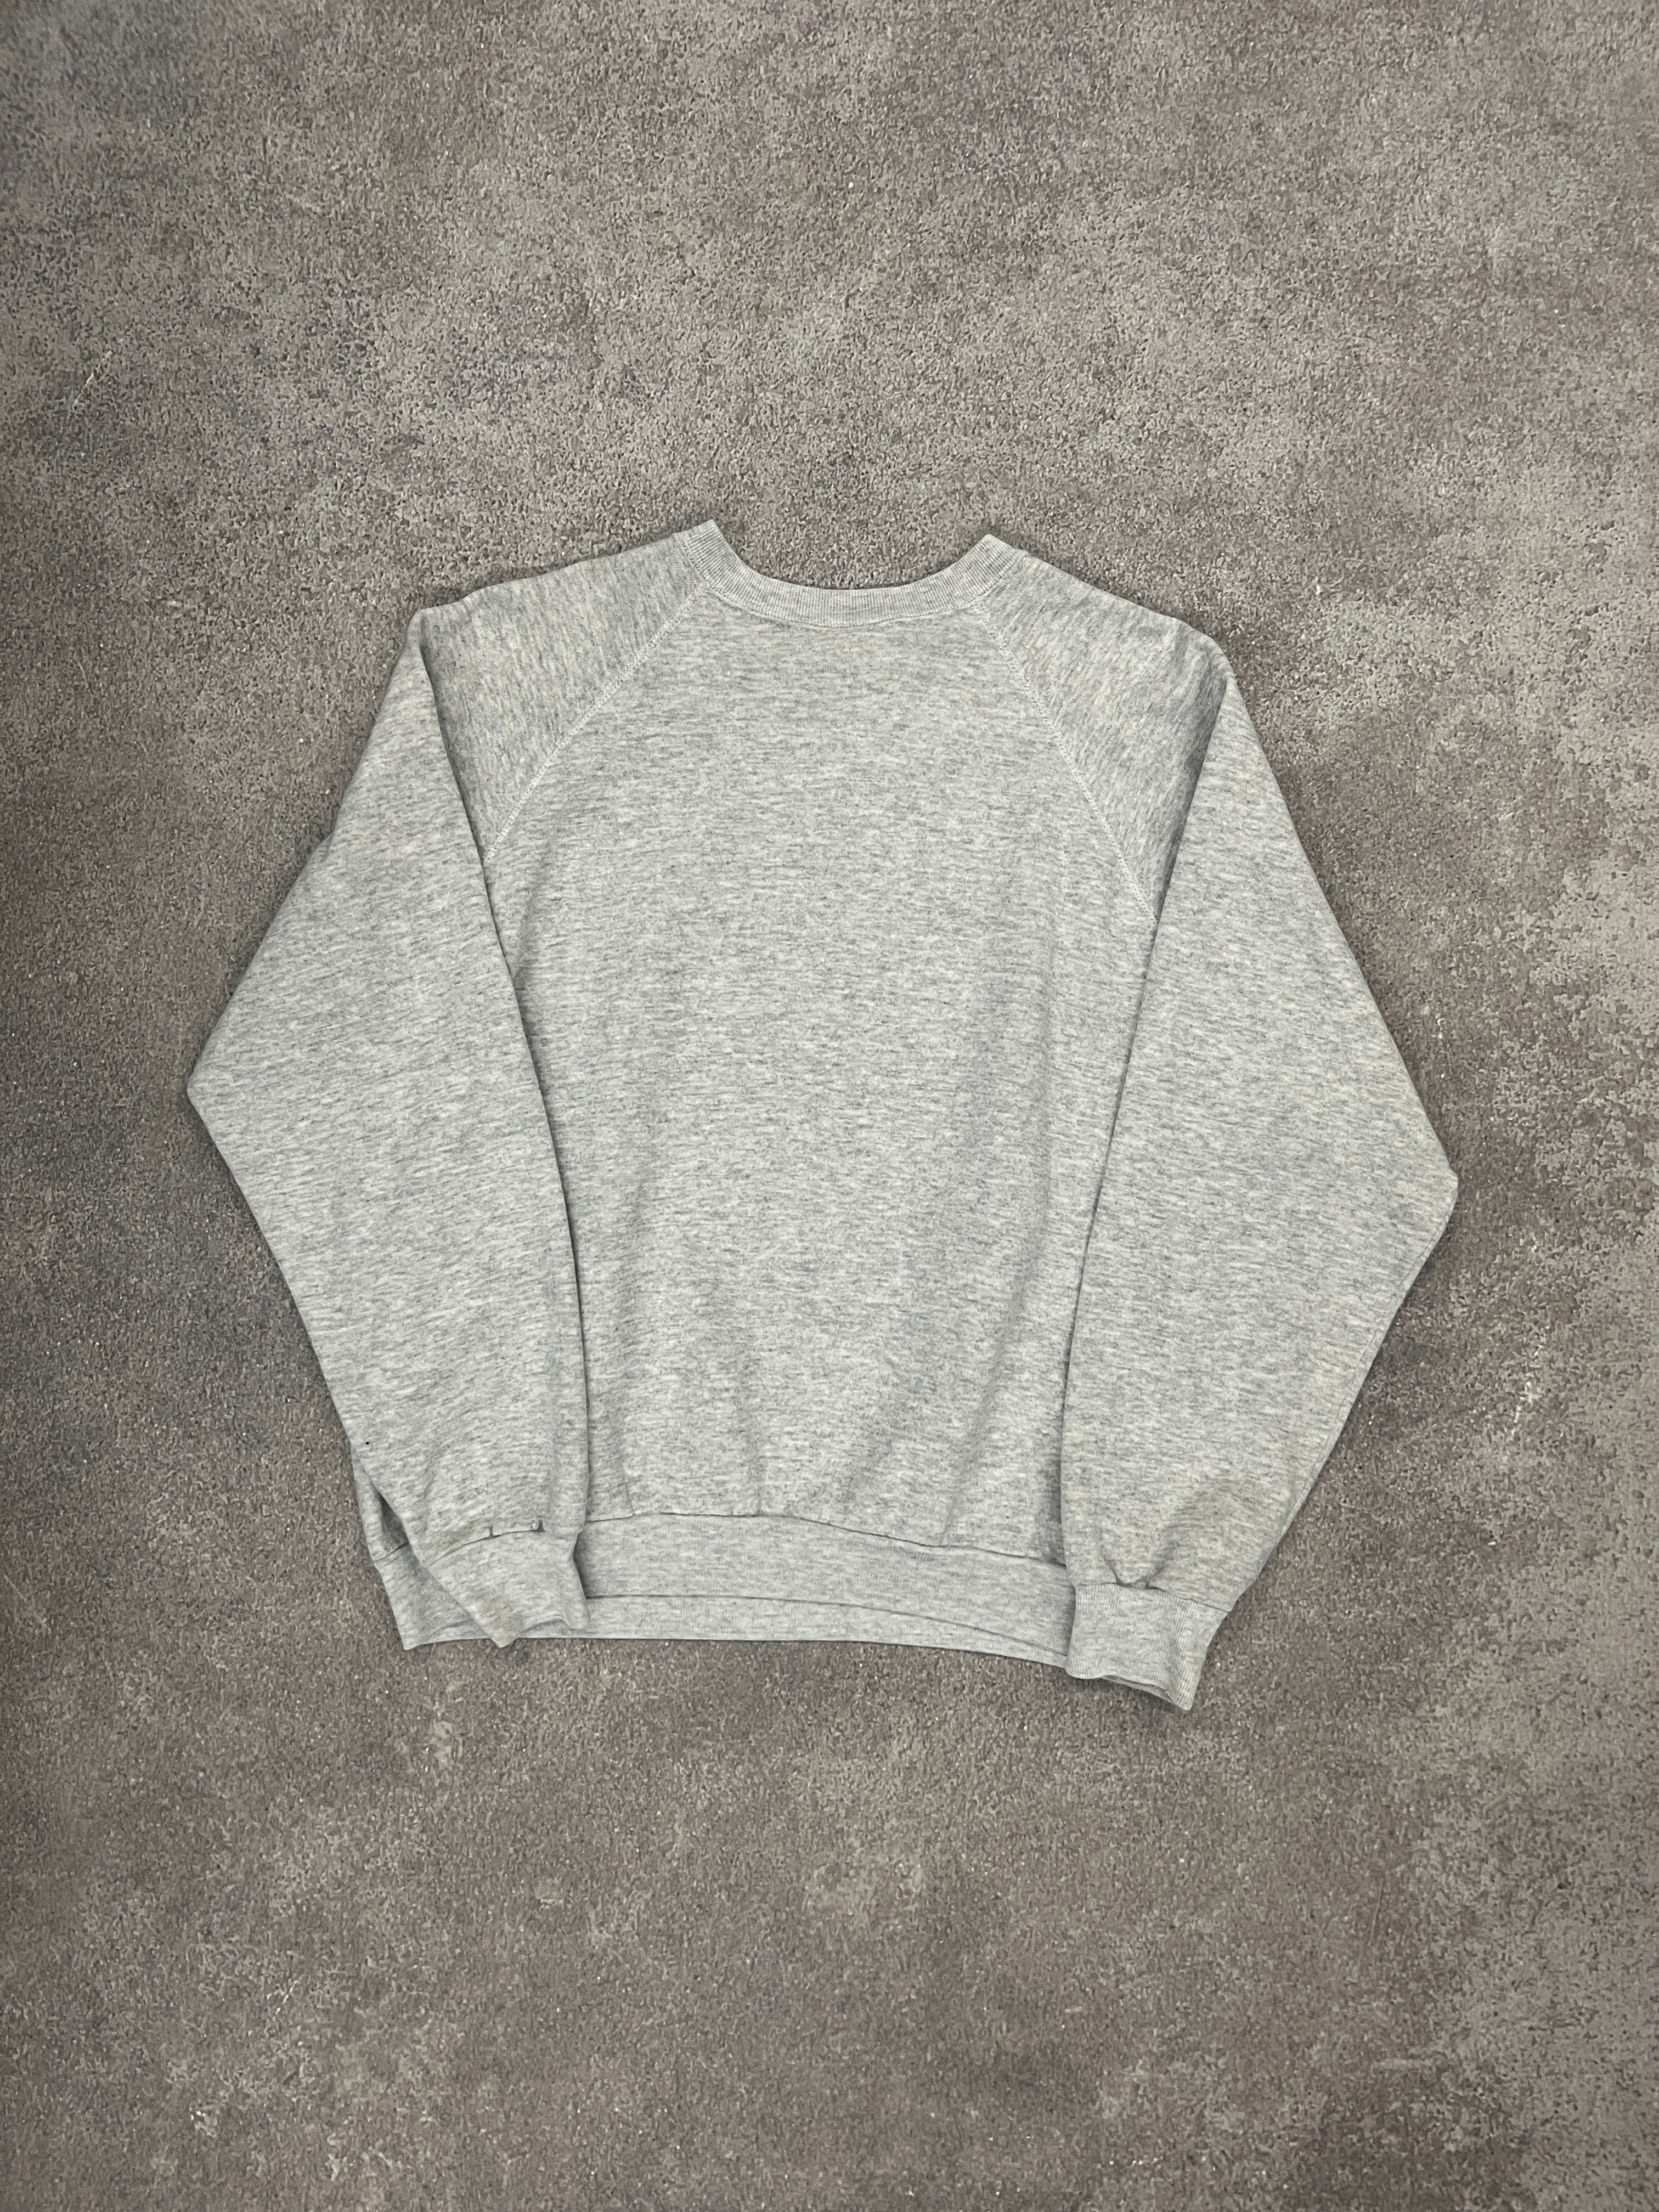 Vintage Blank Sweater Grey // Large - RHAGHOUSE VINTAGE